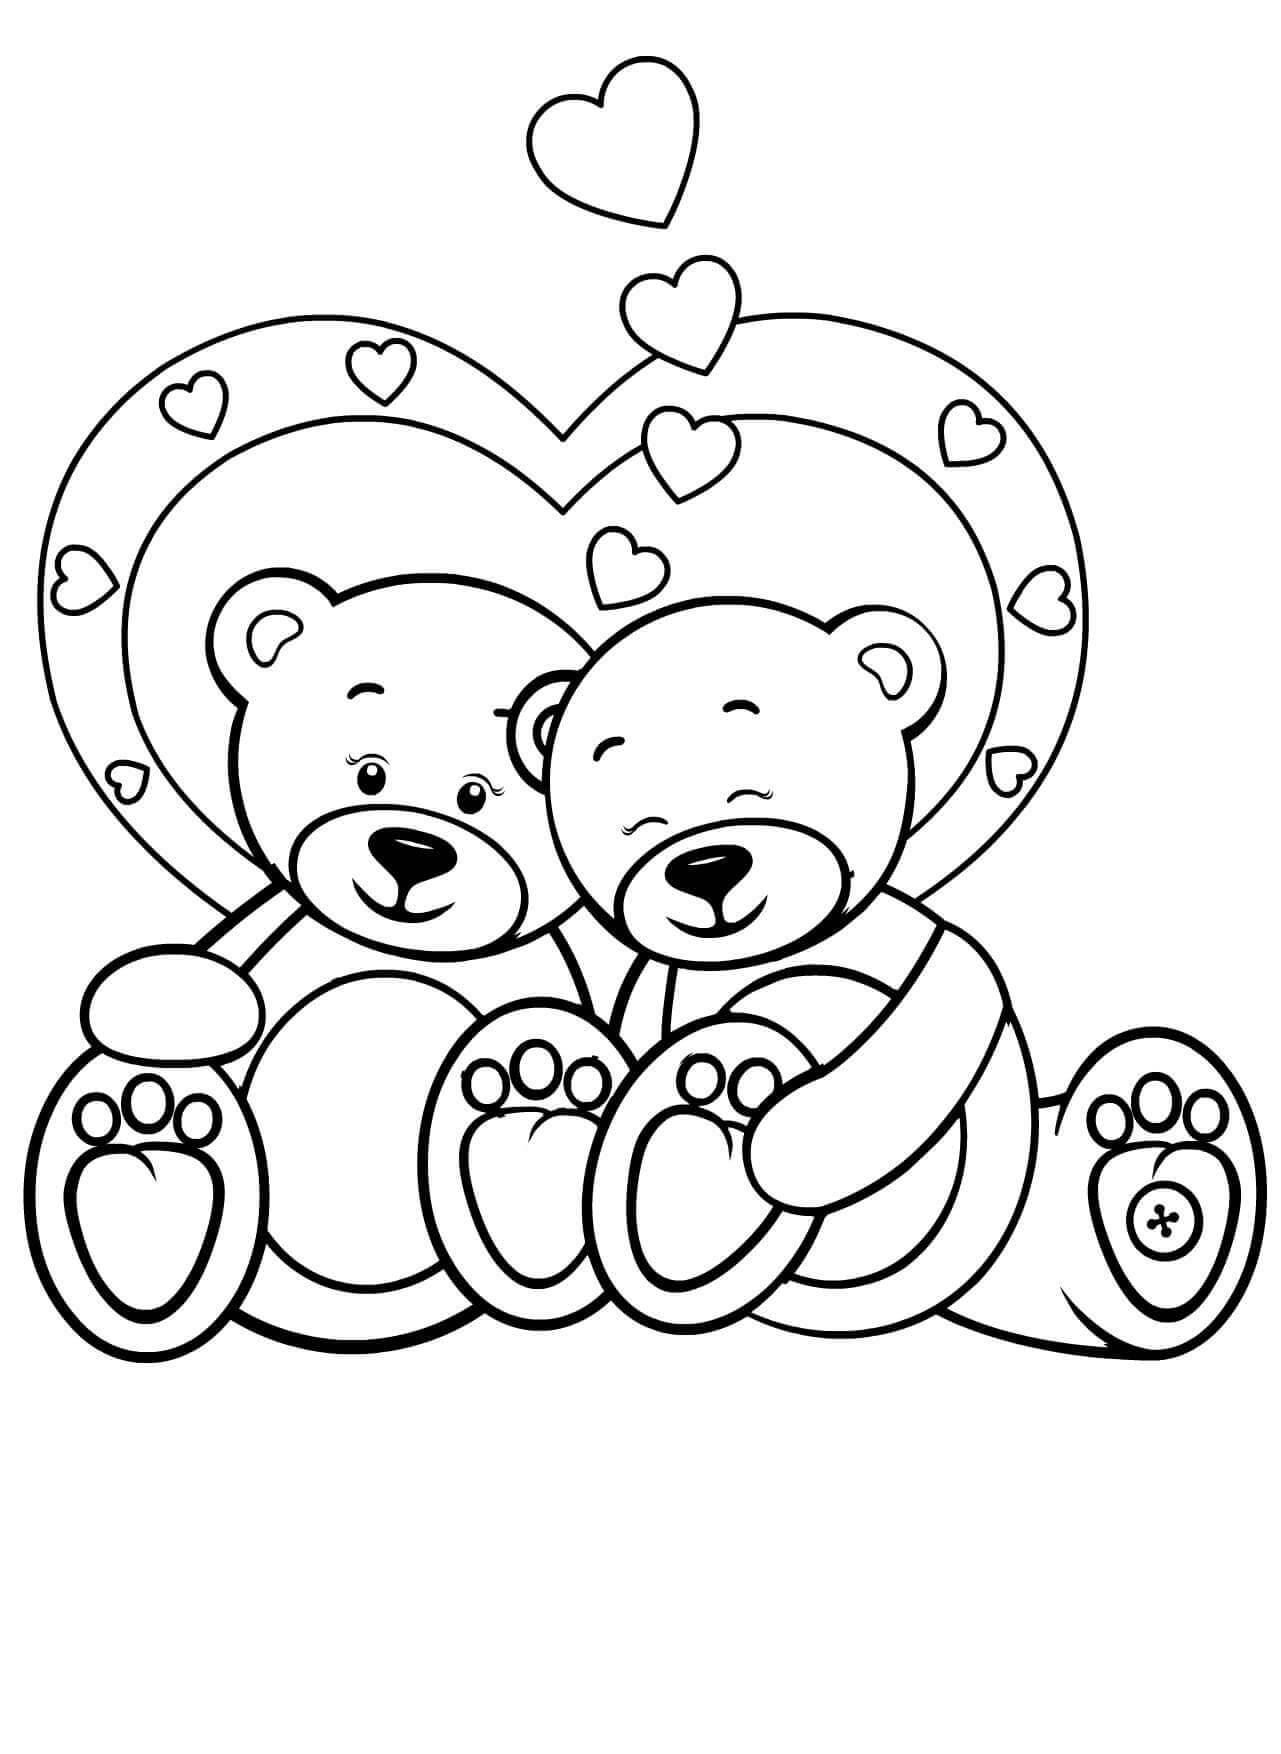 Desenhos de Dois Ursinhos De Pelúcia No Dia Dos Namorados para colorir